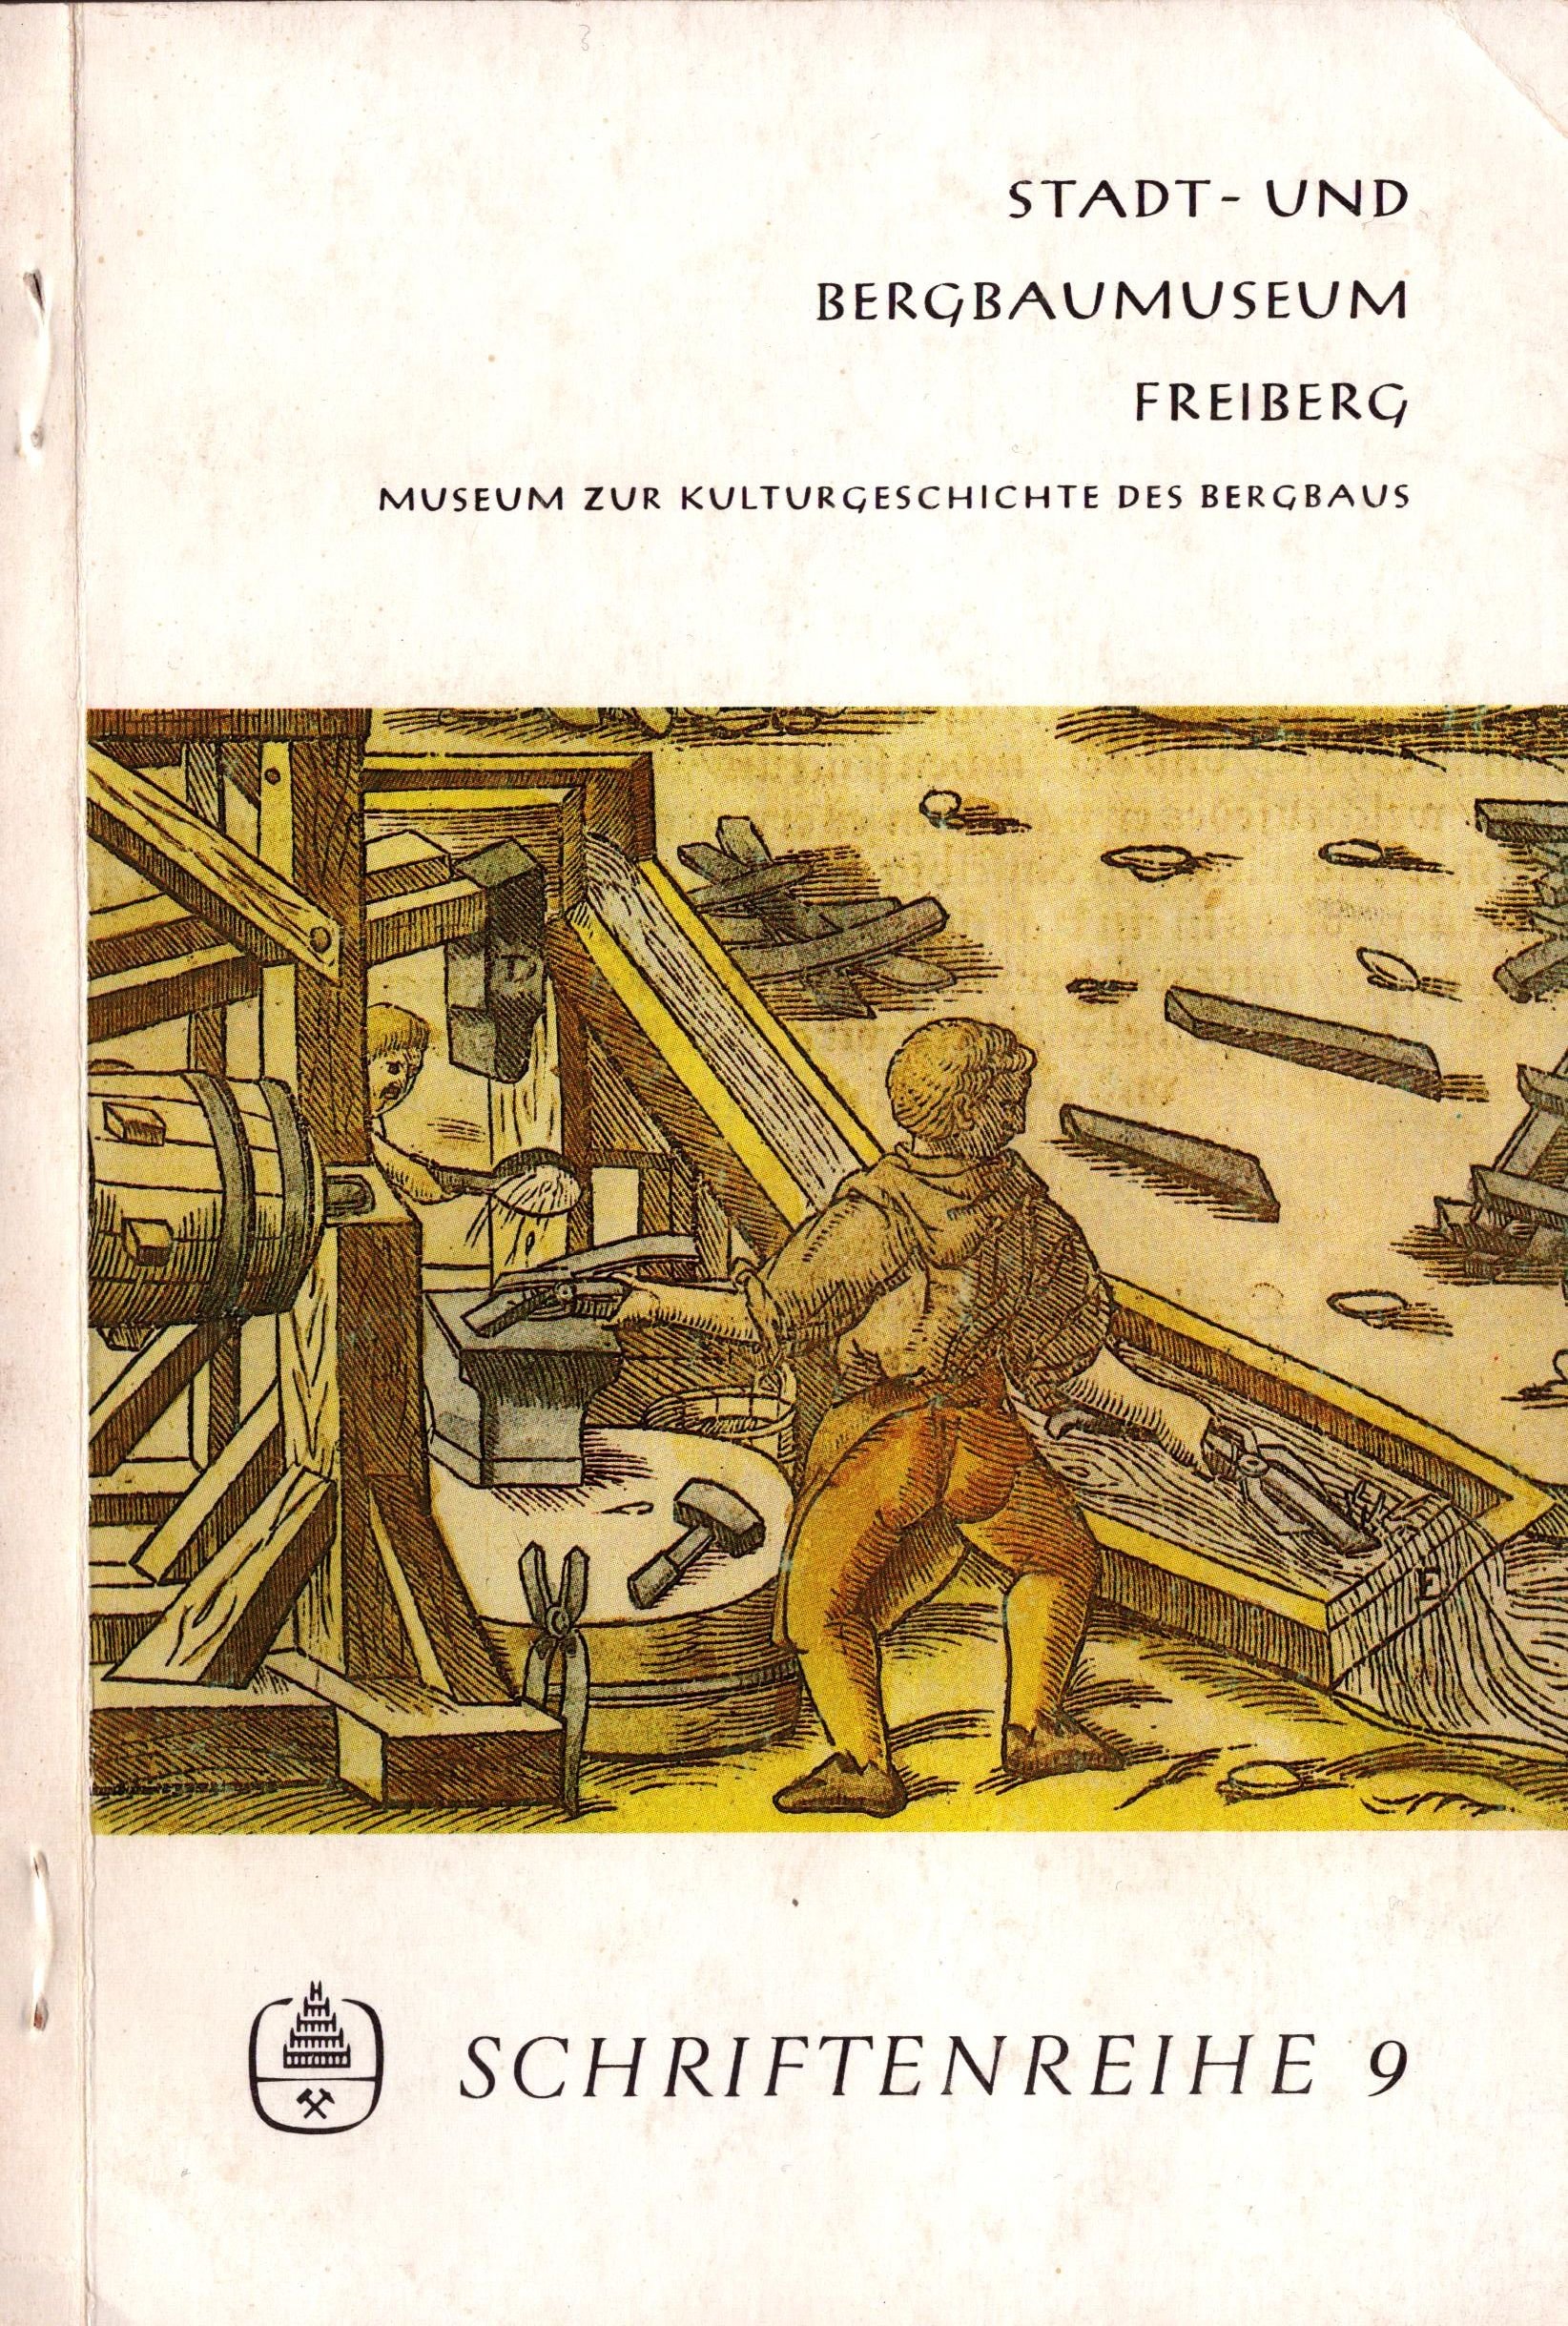 Stadt- und Bergbaumuseum Freiberg - Schriftenreihe 9 (Archiv SAXONIA-FREIBERG-STIFTUNG CC BY-NC-SA)